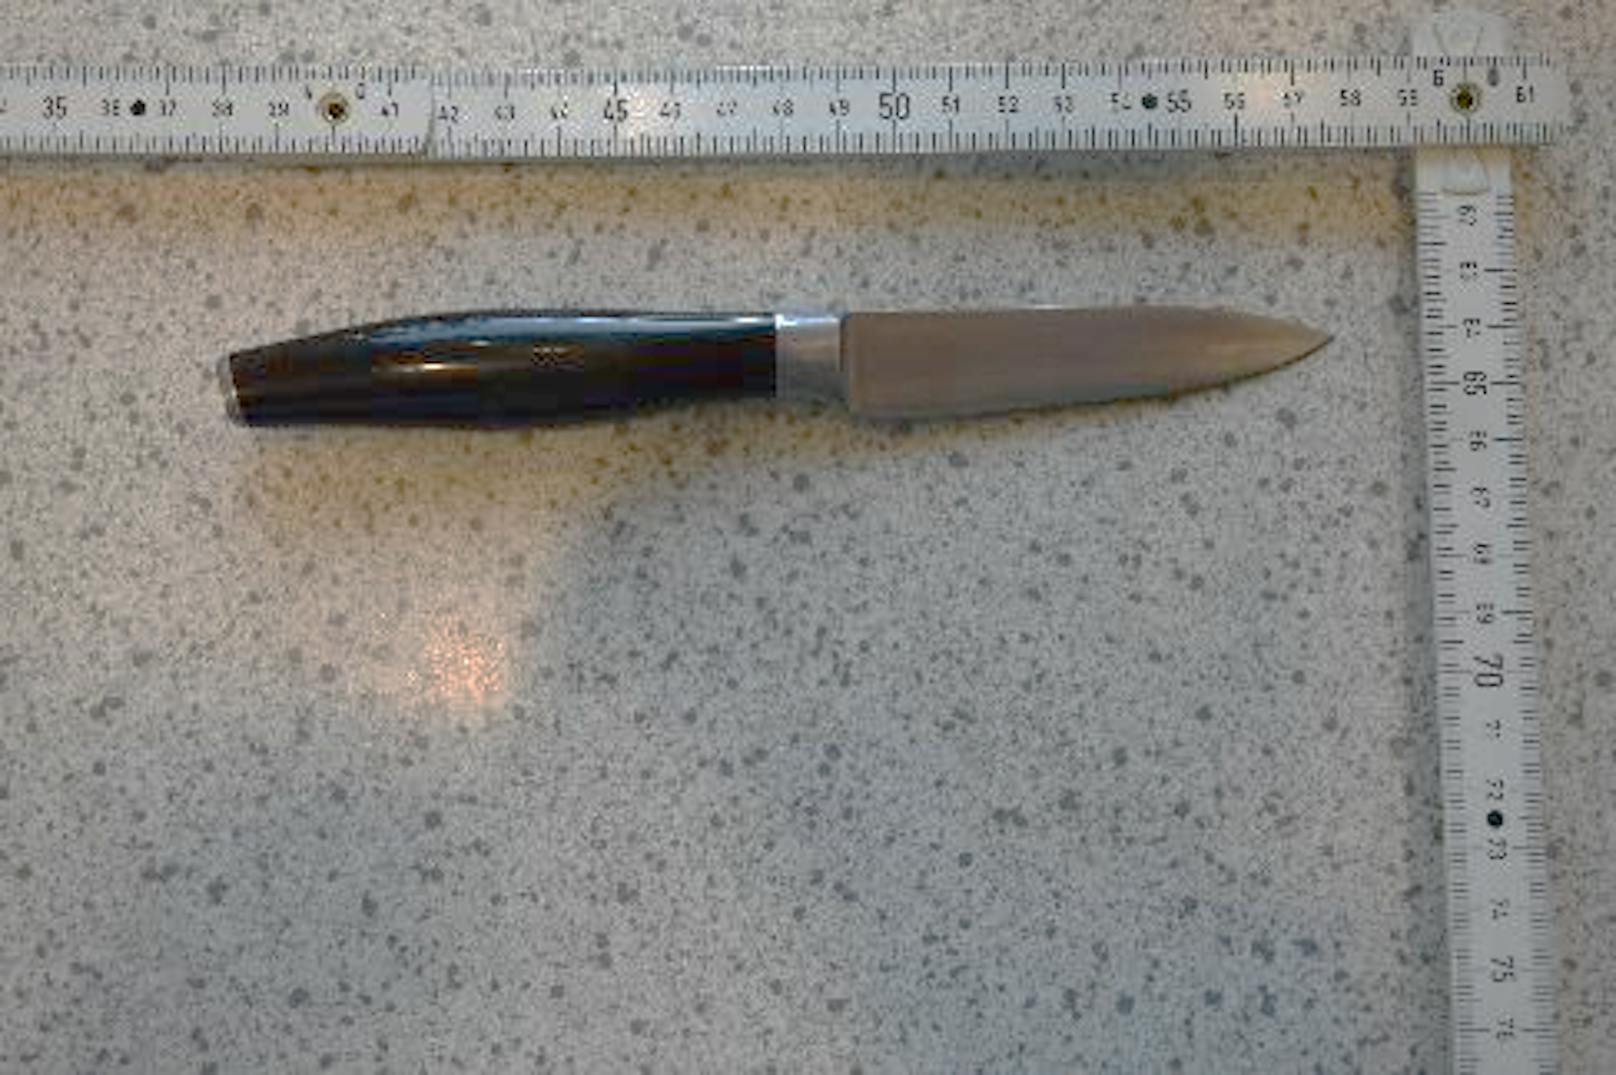 Das Messer wurde von der Polizei sichergestellt.